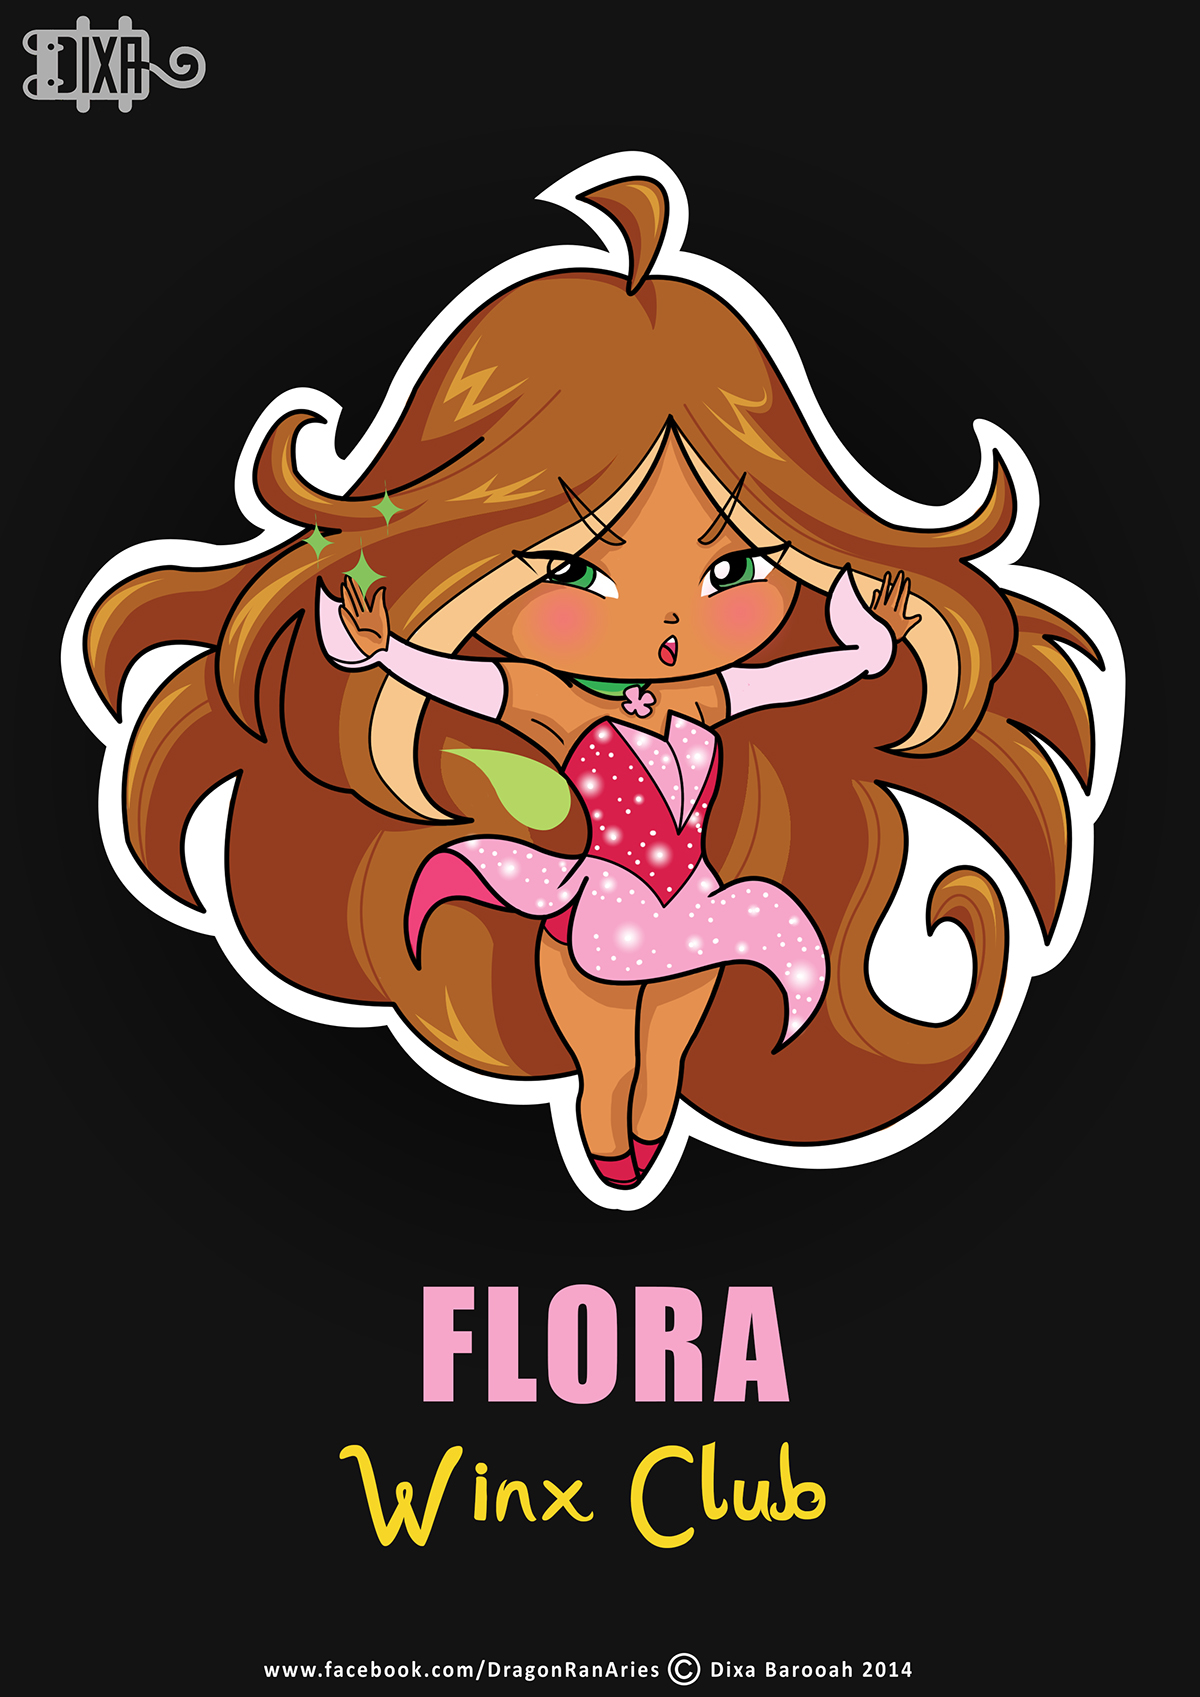 winx bloom Flora Stella tecna musa Winx Club  Fairies Magical chibi chibis cute pretty long hair